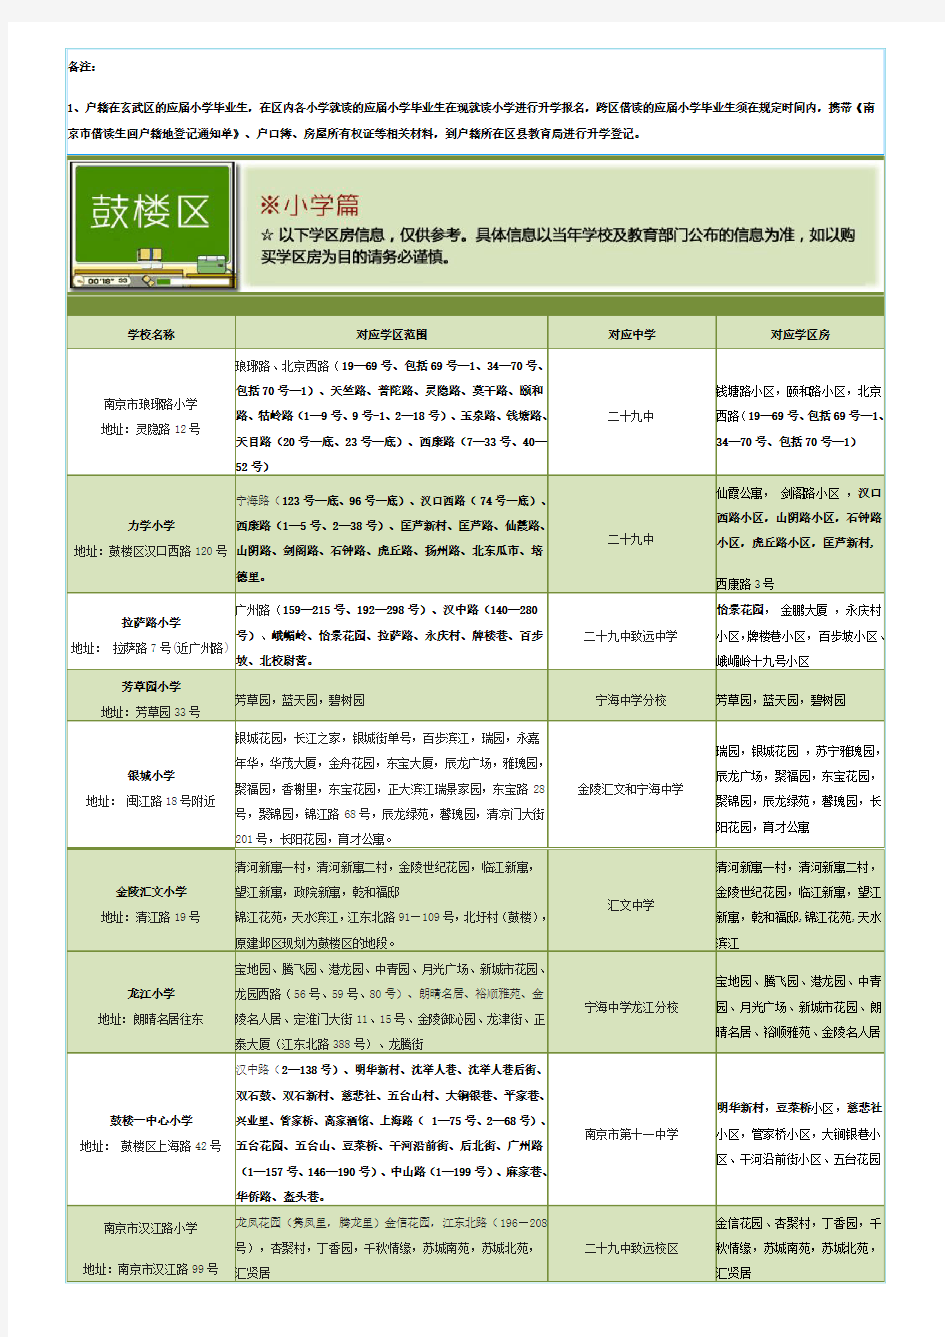 2014南京学区划分